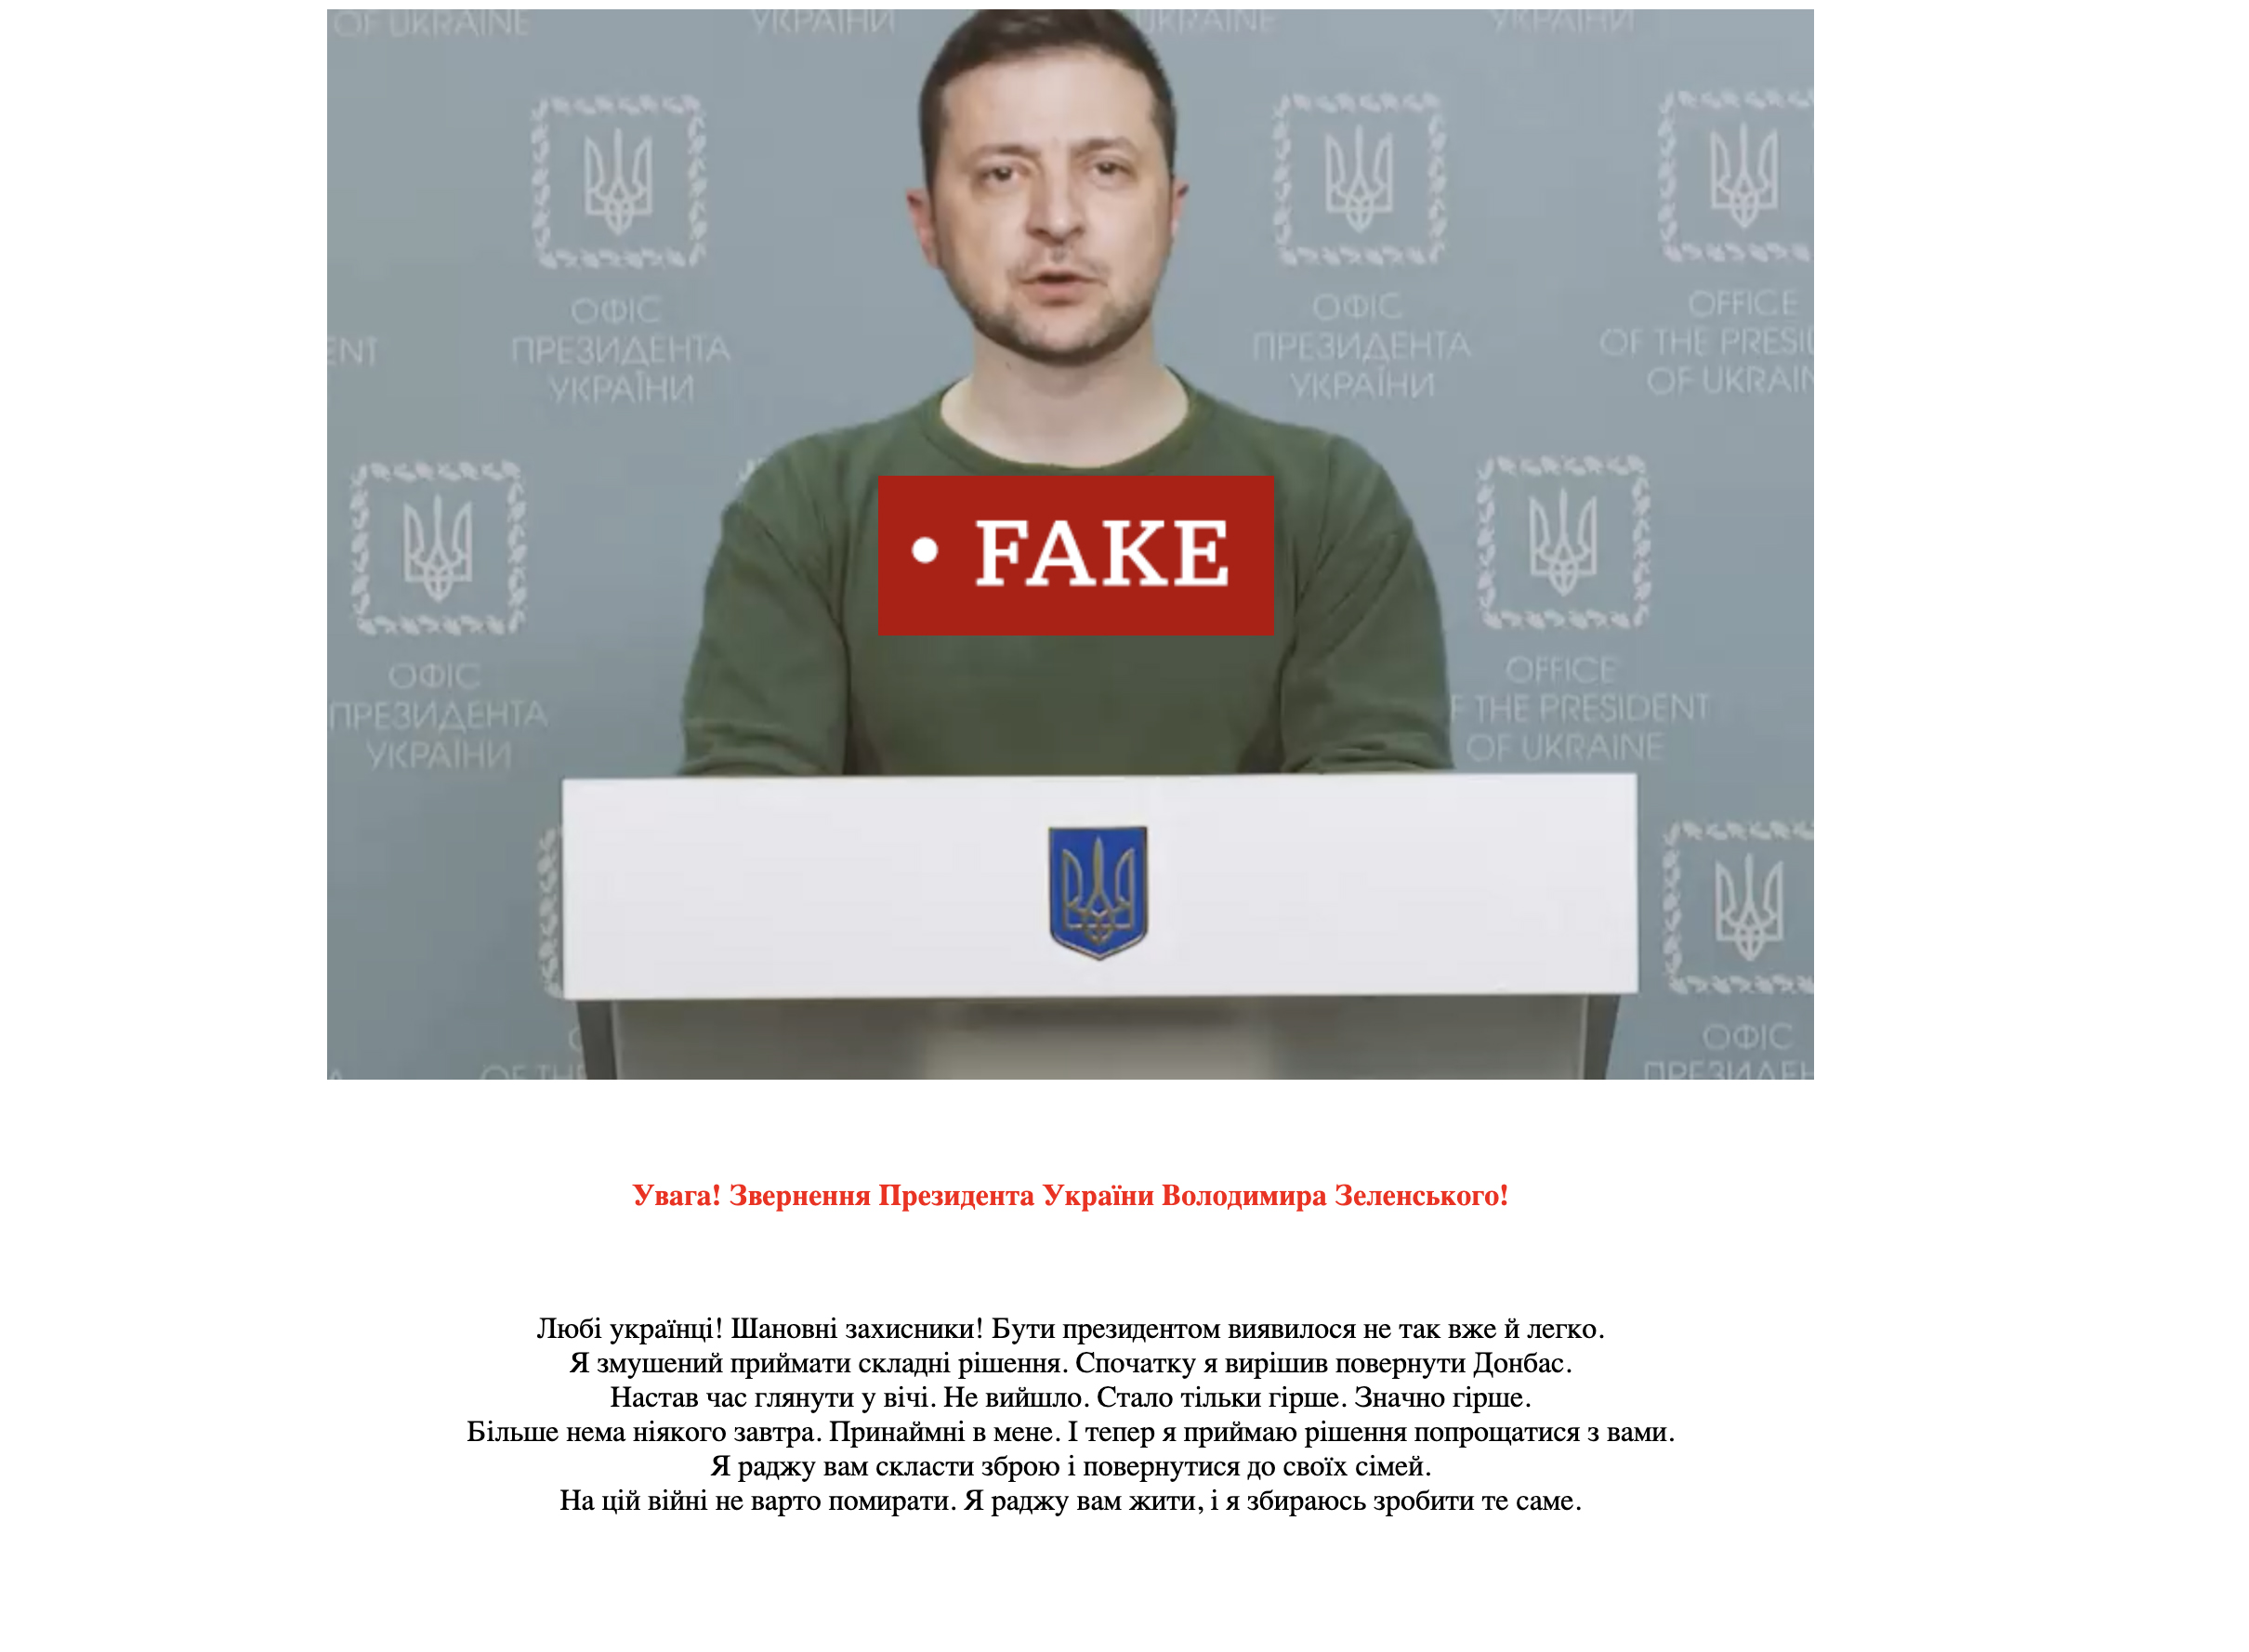 Скриншот из видео с дипфейком Владимира Зеленского